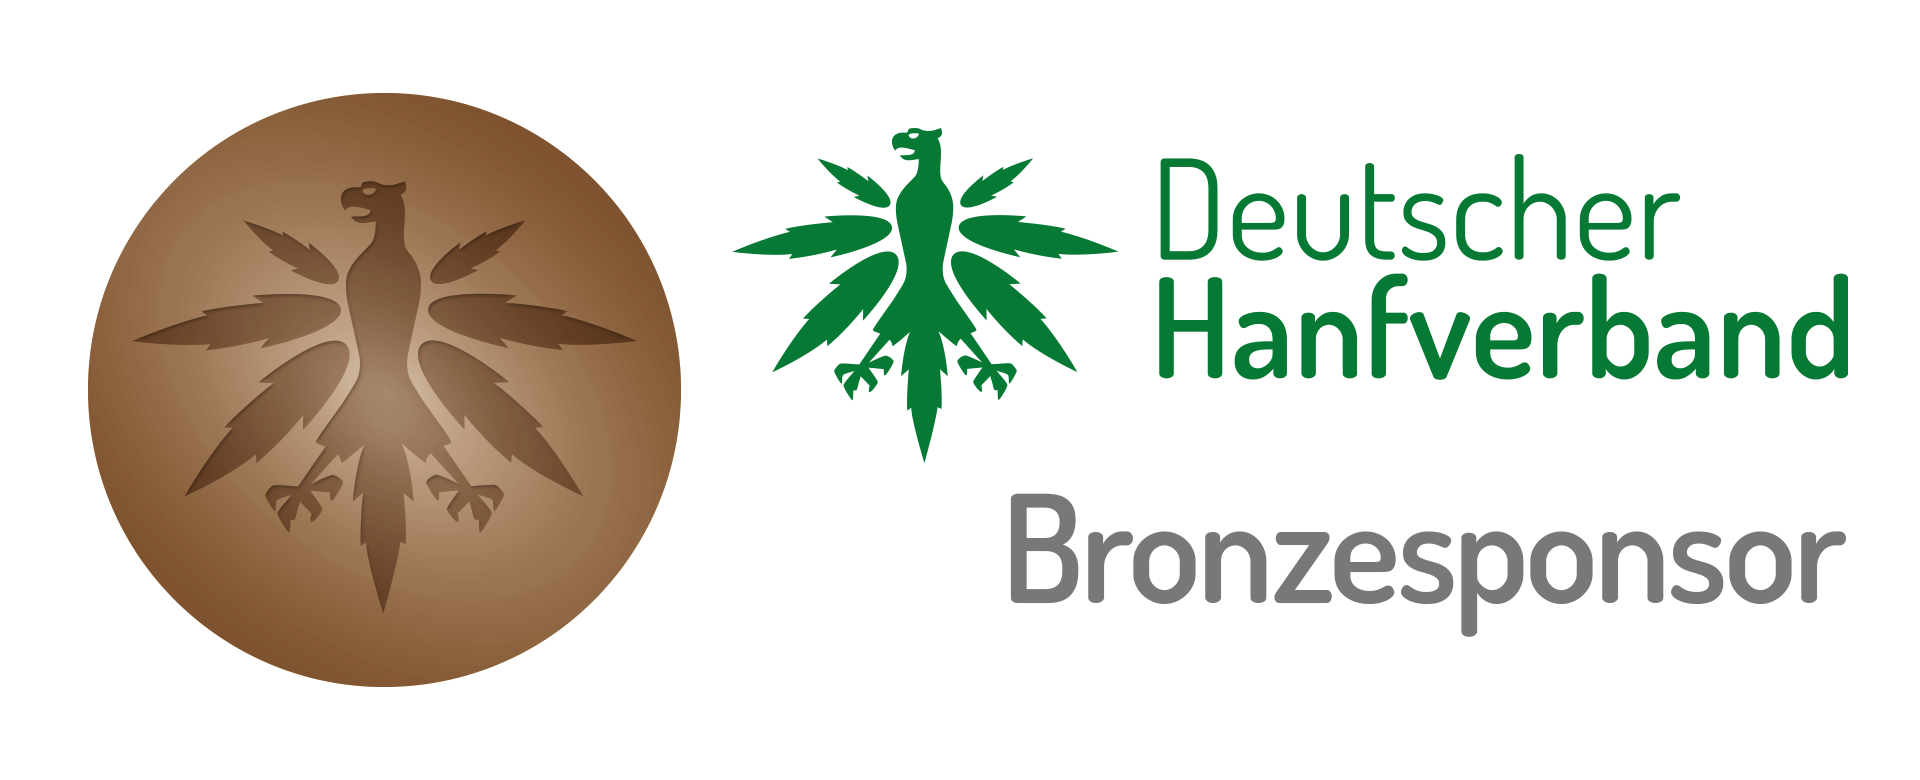 Growshop DHV Bronze Partner